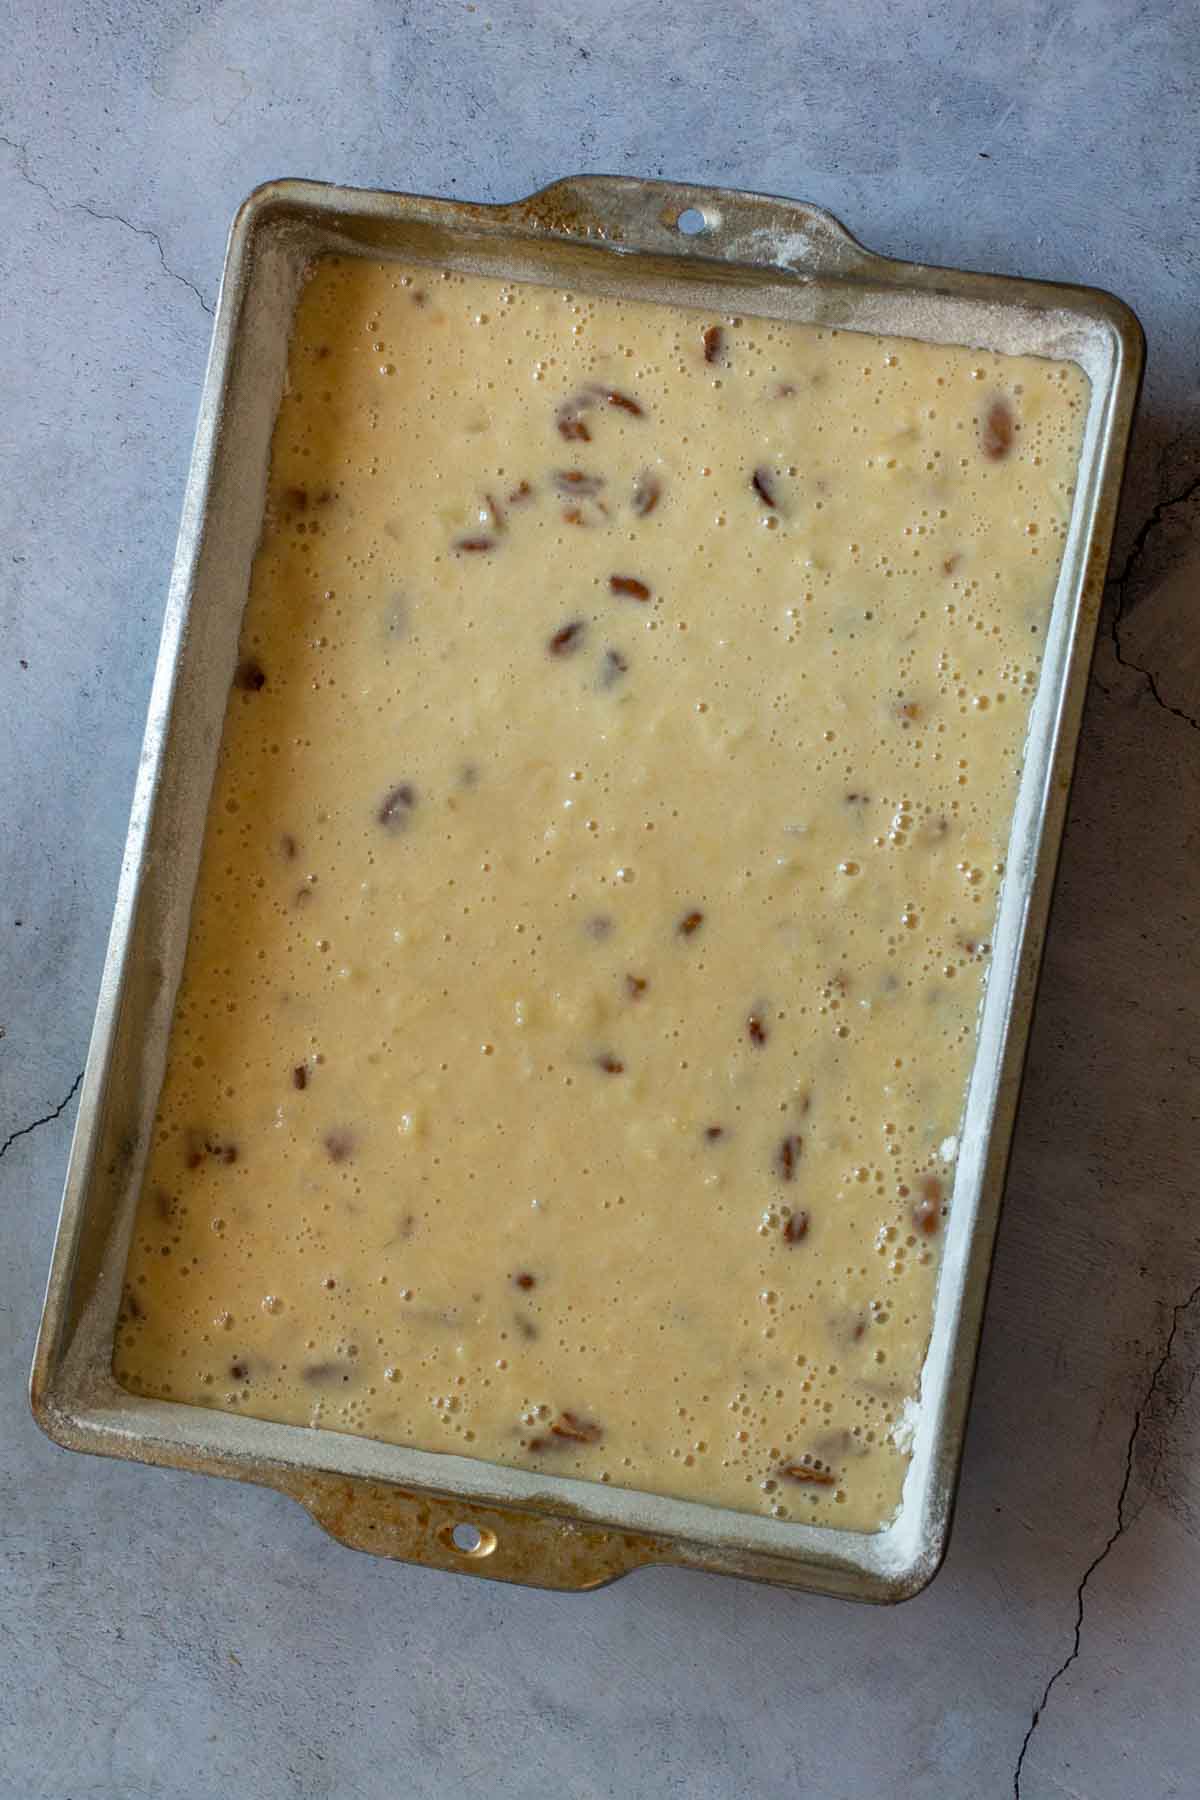 Pineapple cake batter in a rectangular cake pan.